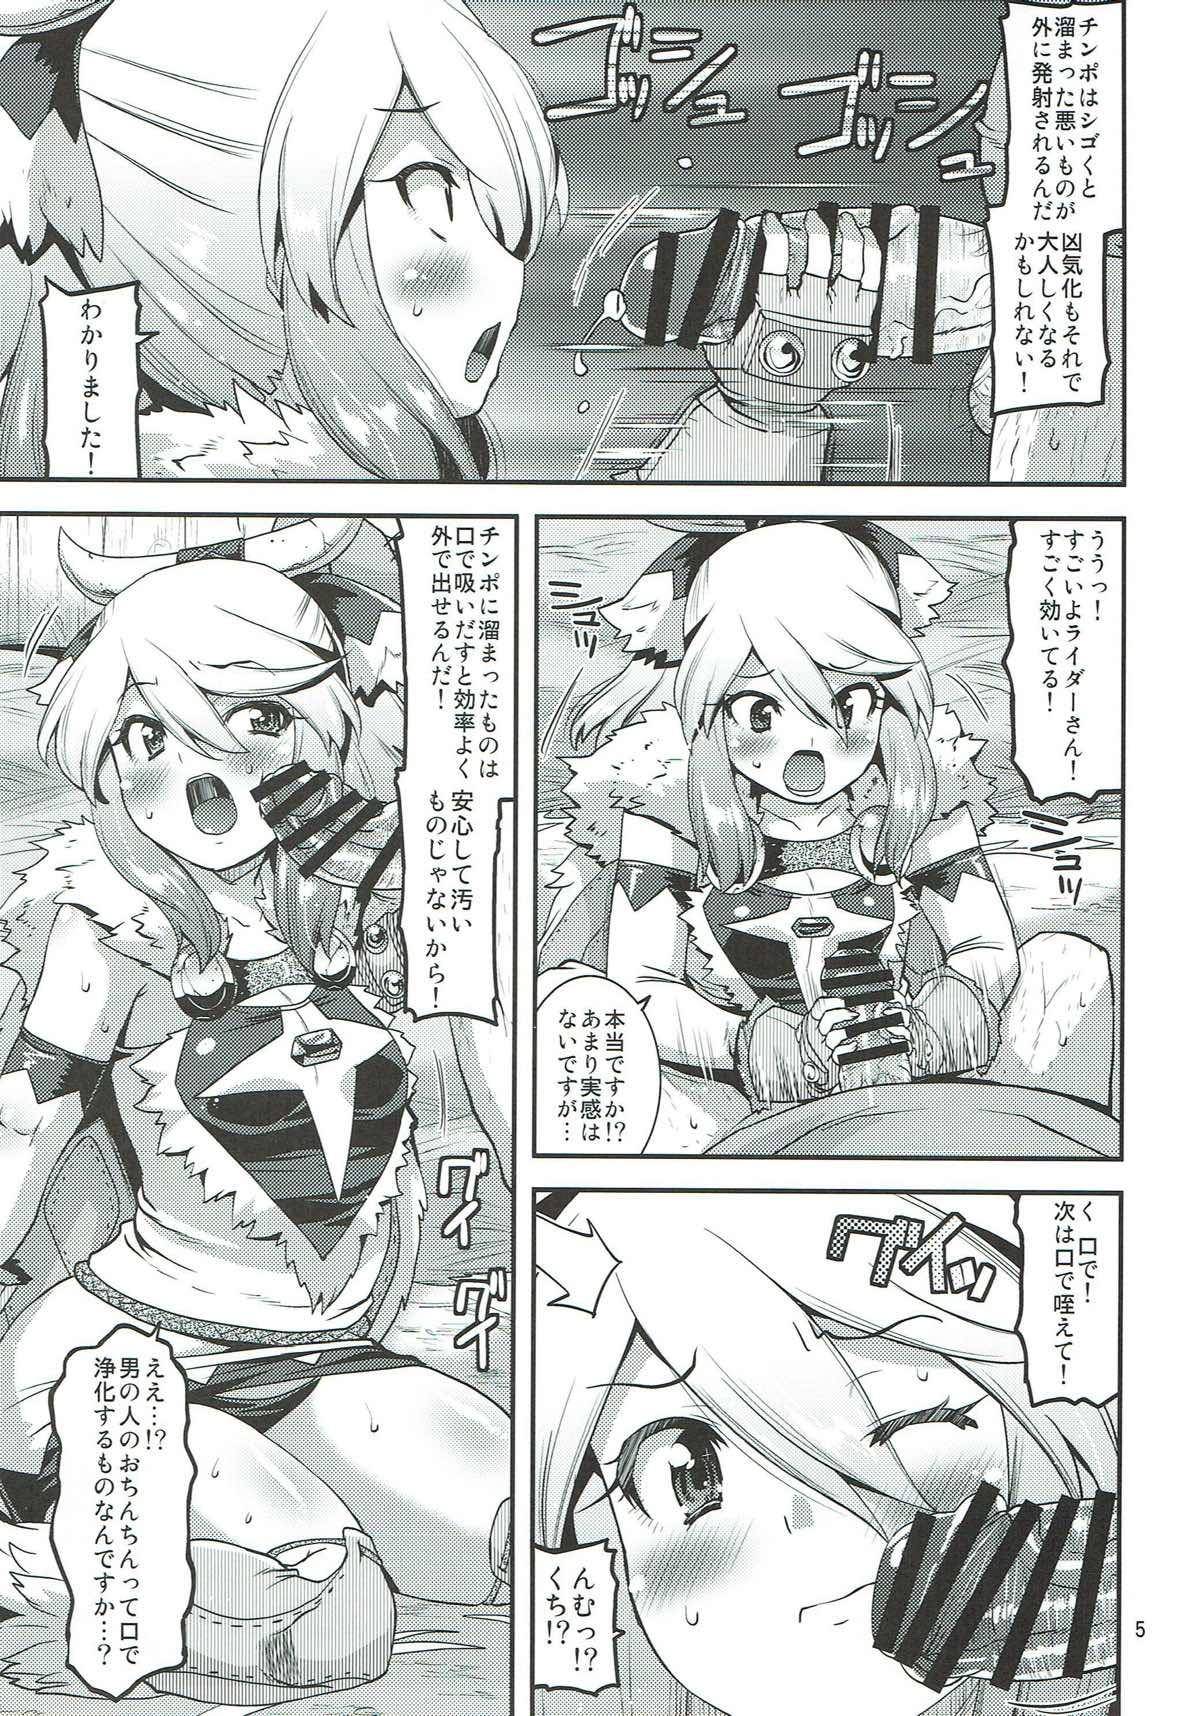 8teenxxx Muku na Inaka Musume ga Ojisan no Jouka ni Hamaru made - Monster hunter The - Page 4